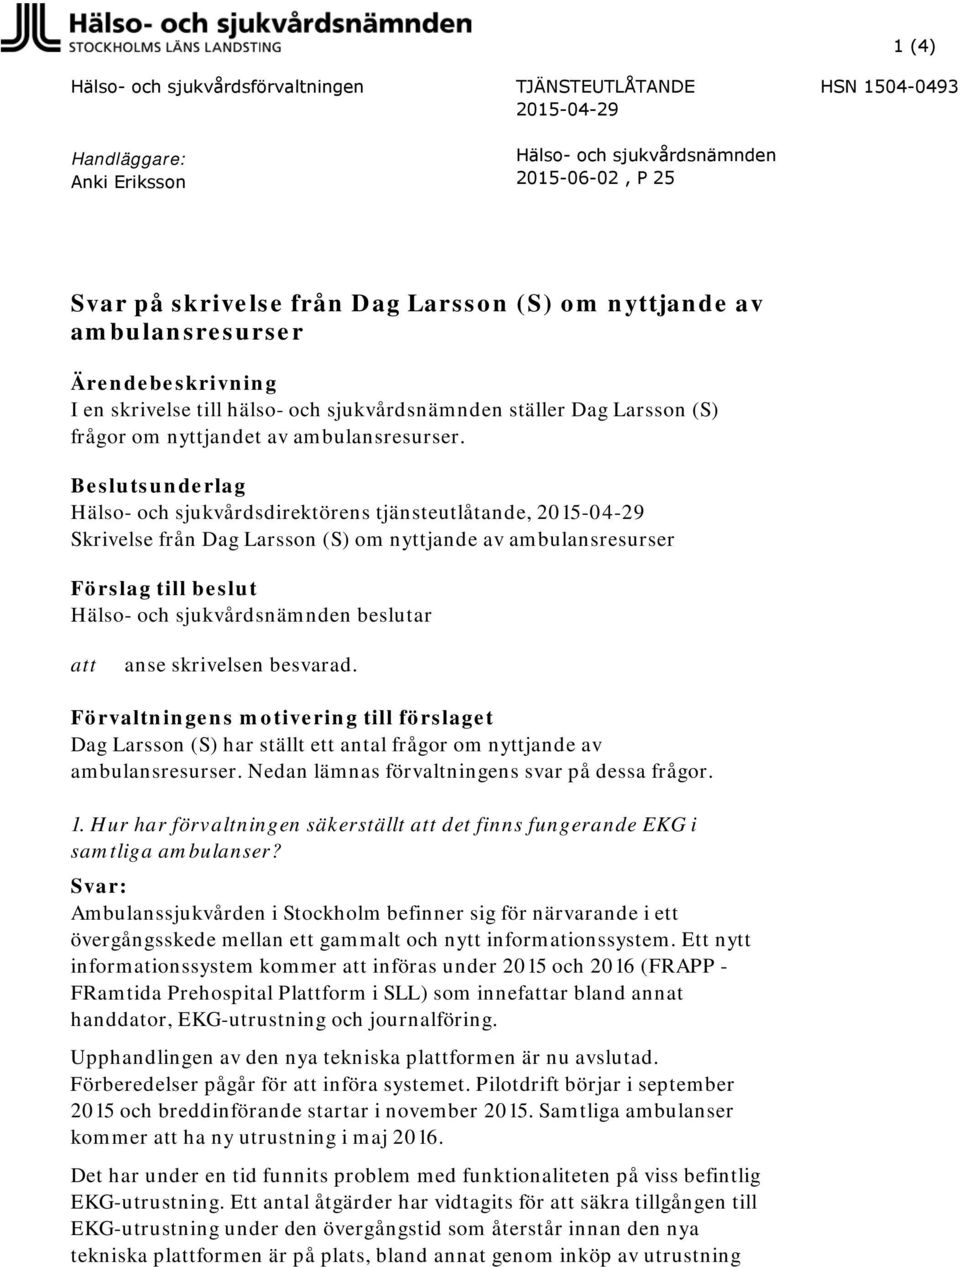 Beslutsunderlag Hälso- och sjukvårdsdirektörens tjänsteutlåtande, 2015-04-29 Skrivelse från Dag Larsson (S) om nyttjande av ambulansresurser Förslag till beslut Hälso- och sjukvårdsnämnden beslutar